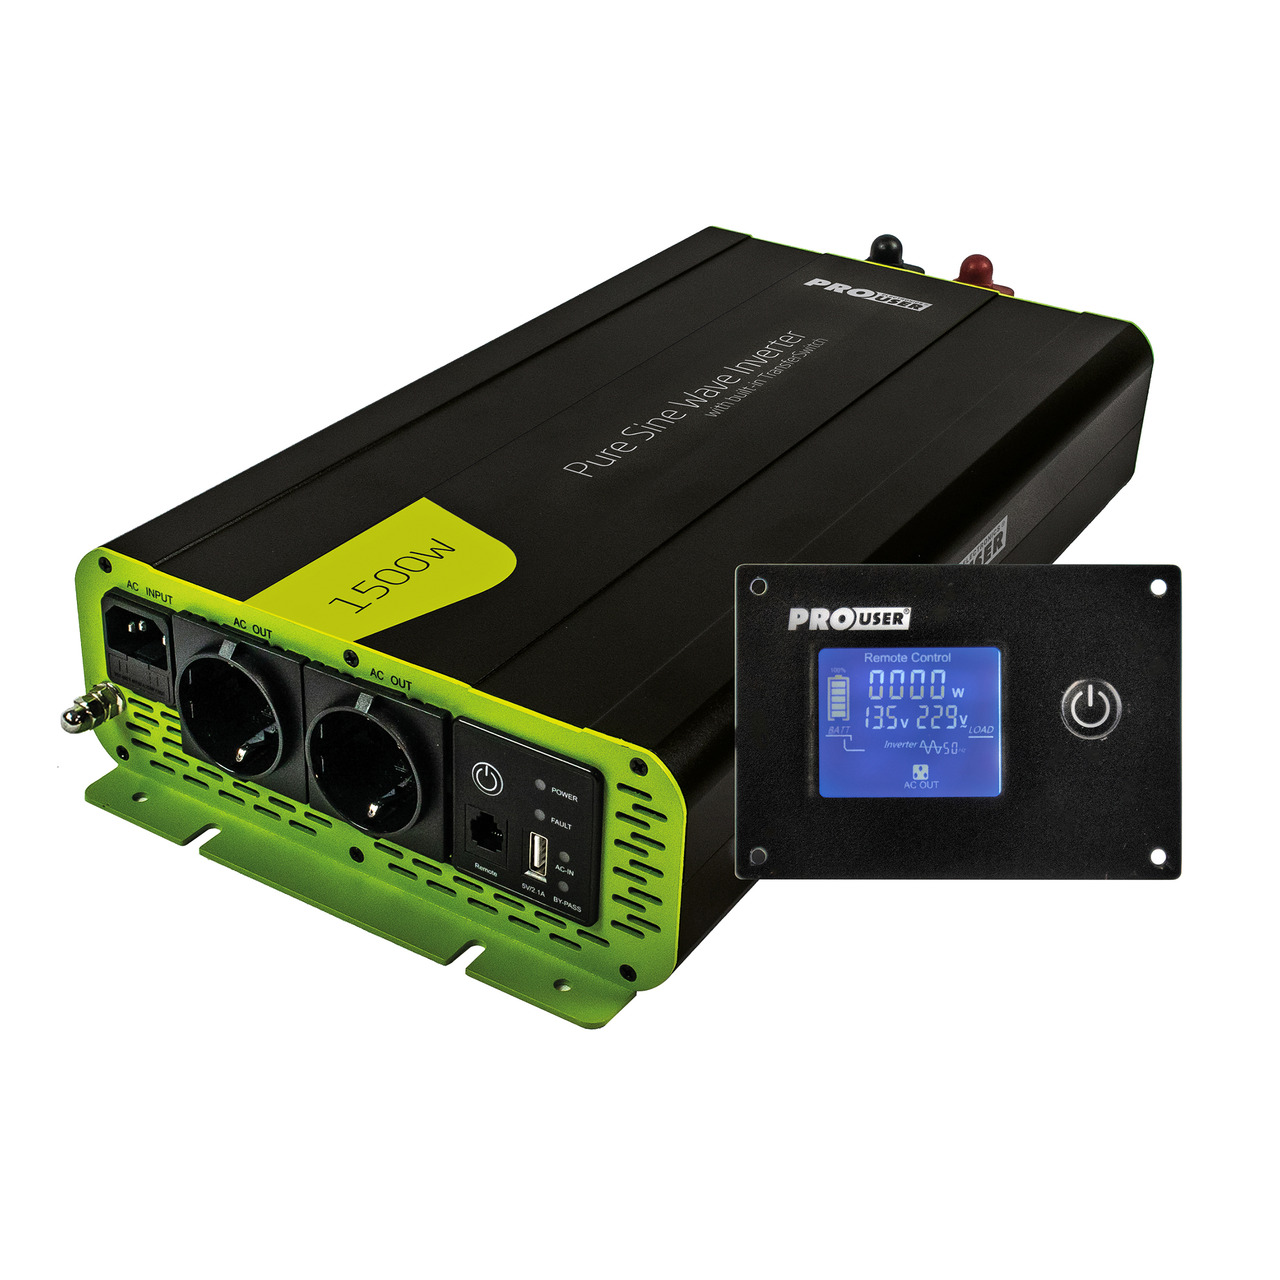 ProUser Spannungswandler PSI1500TX mit 1500 W- 12 V auf 230 V- mit Display und reiner Sinuswelle unter Stromversorgung